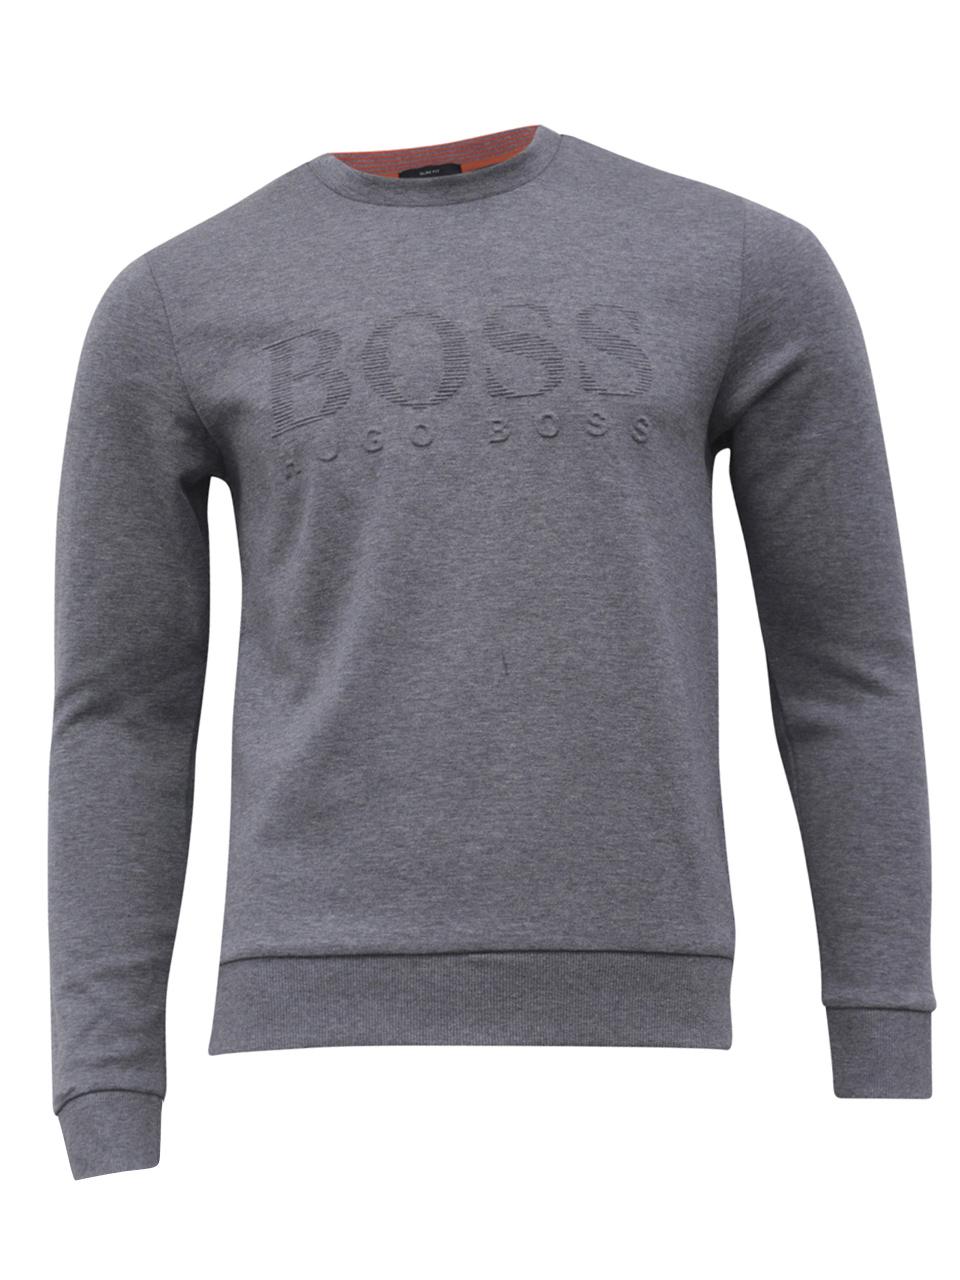 Hugo Boss Men's Salbo Slim Fit Crew Neck Sweatshirt